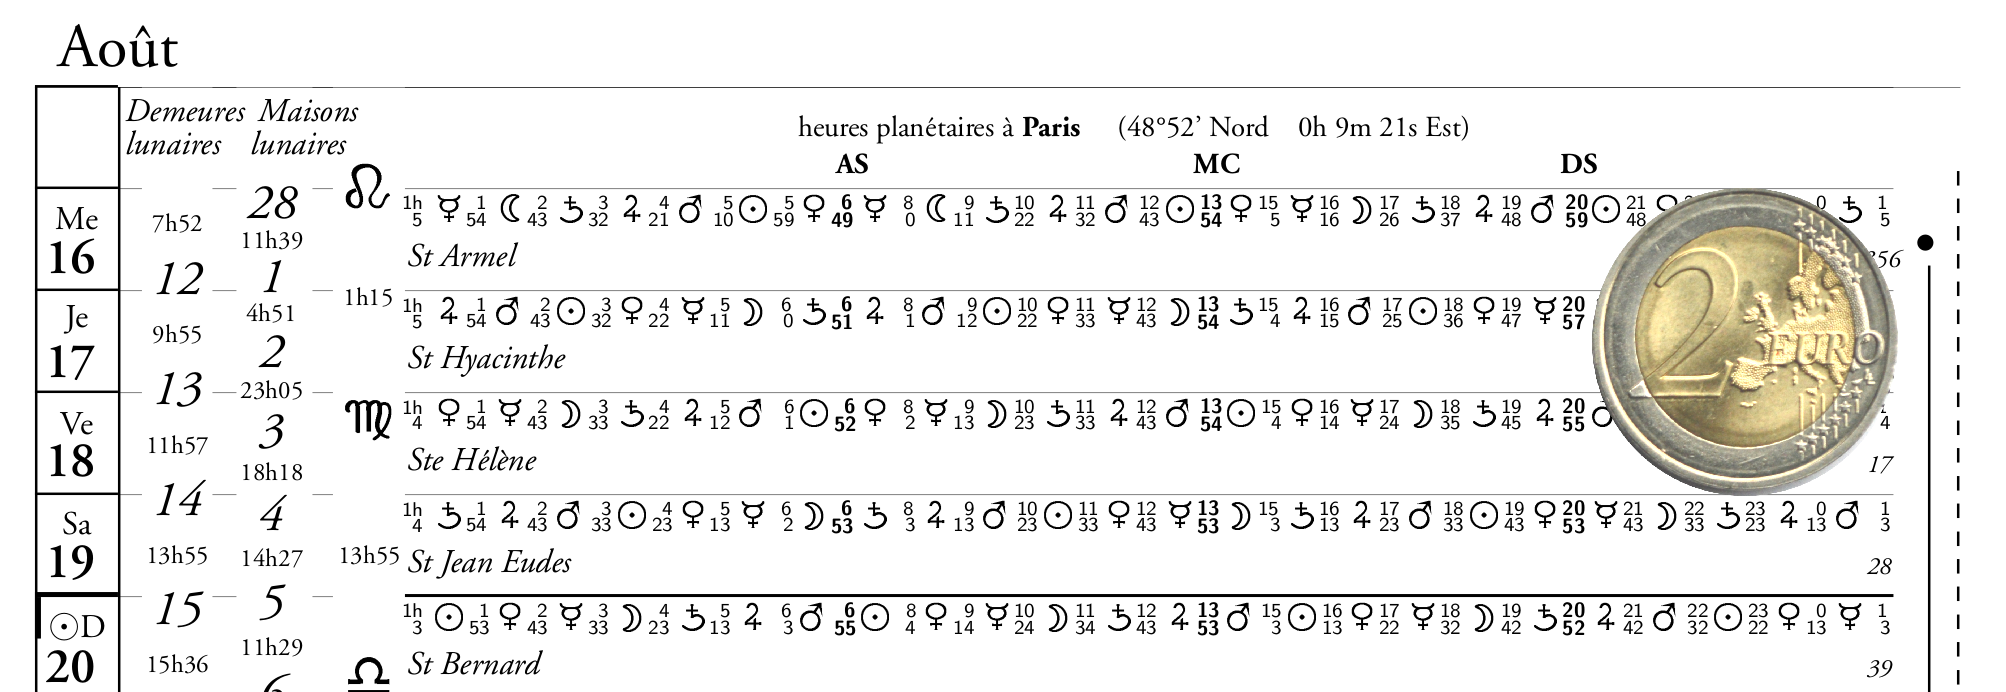 detail du calendrier astrologique, version de base